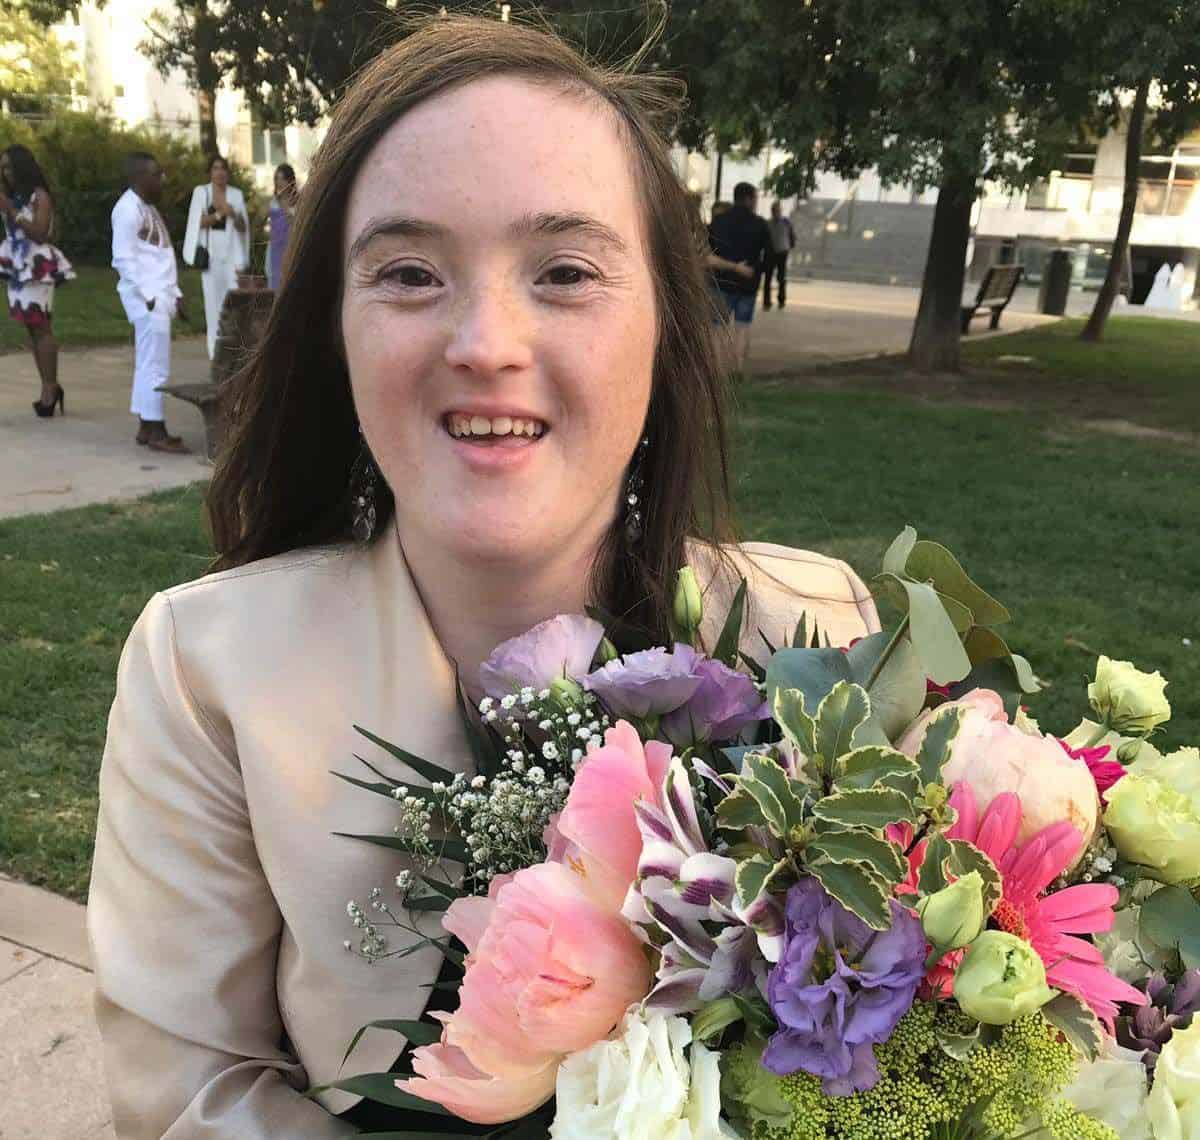 Por primera vez, una persona con síndrome de Down consigue un grado universitario en España